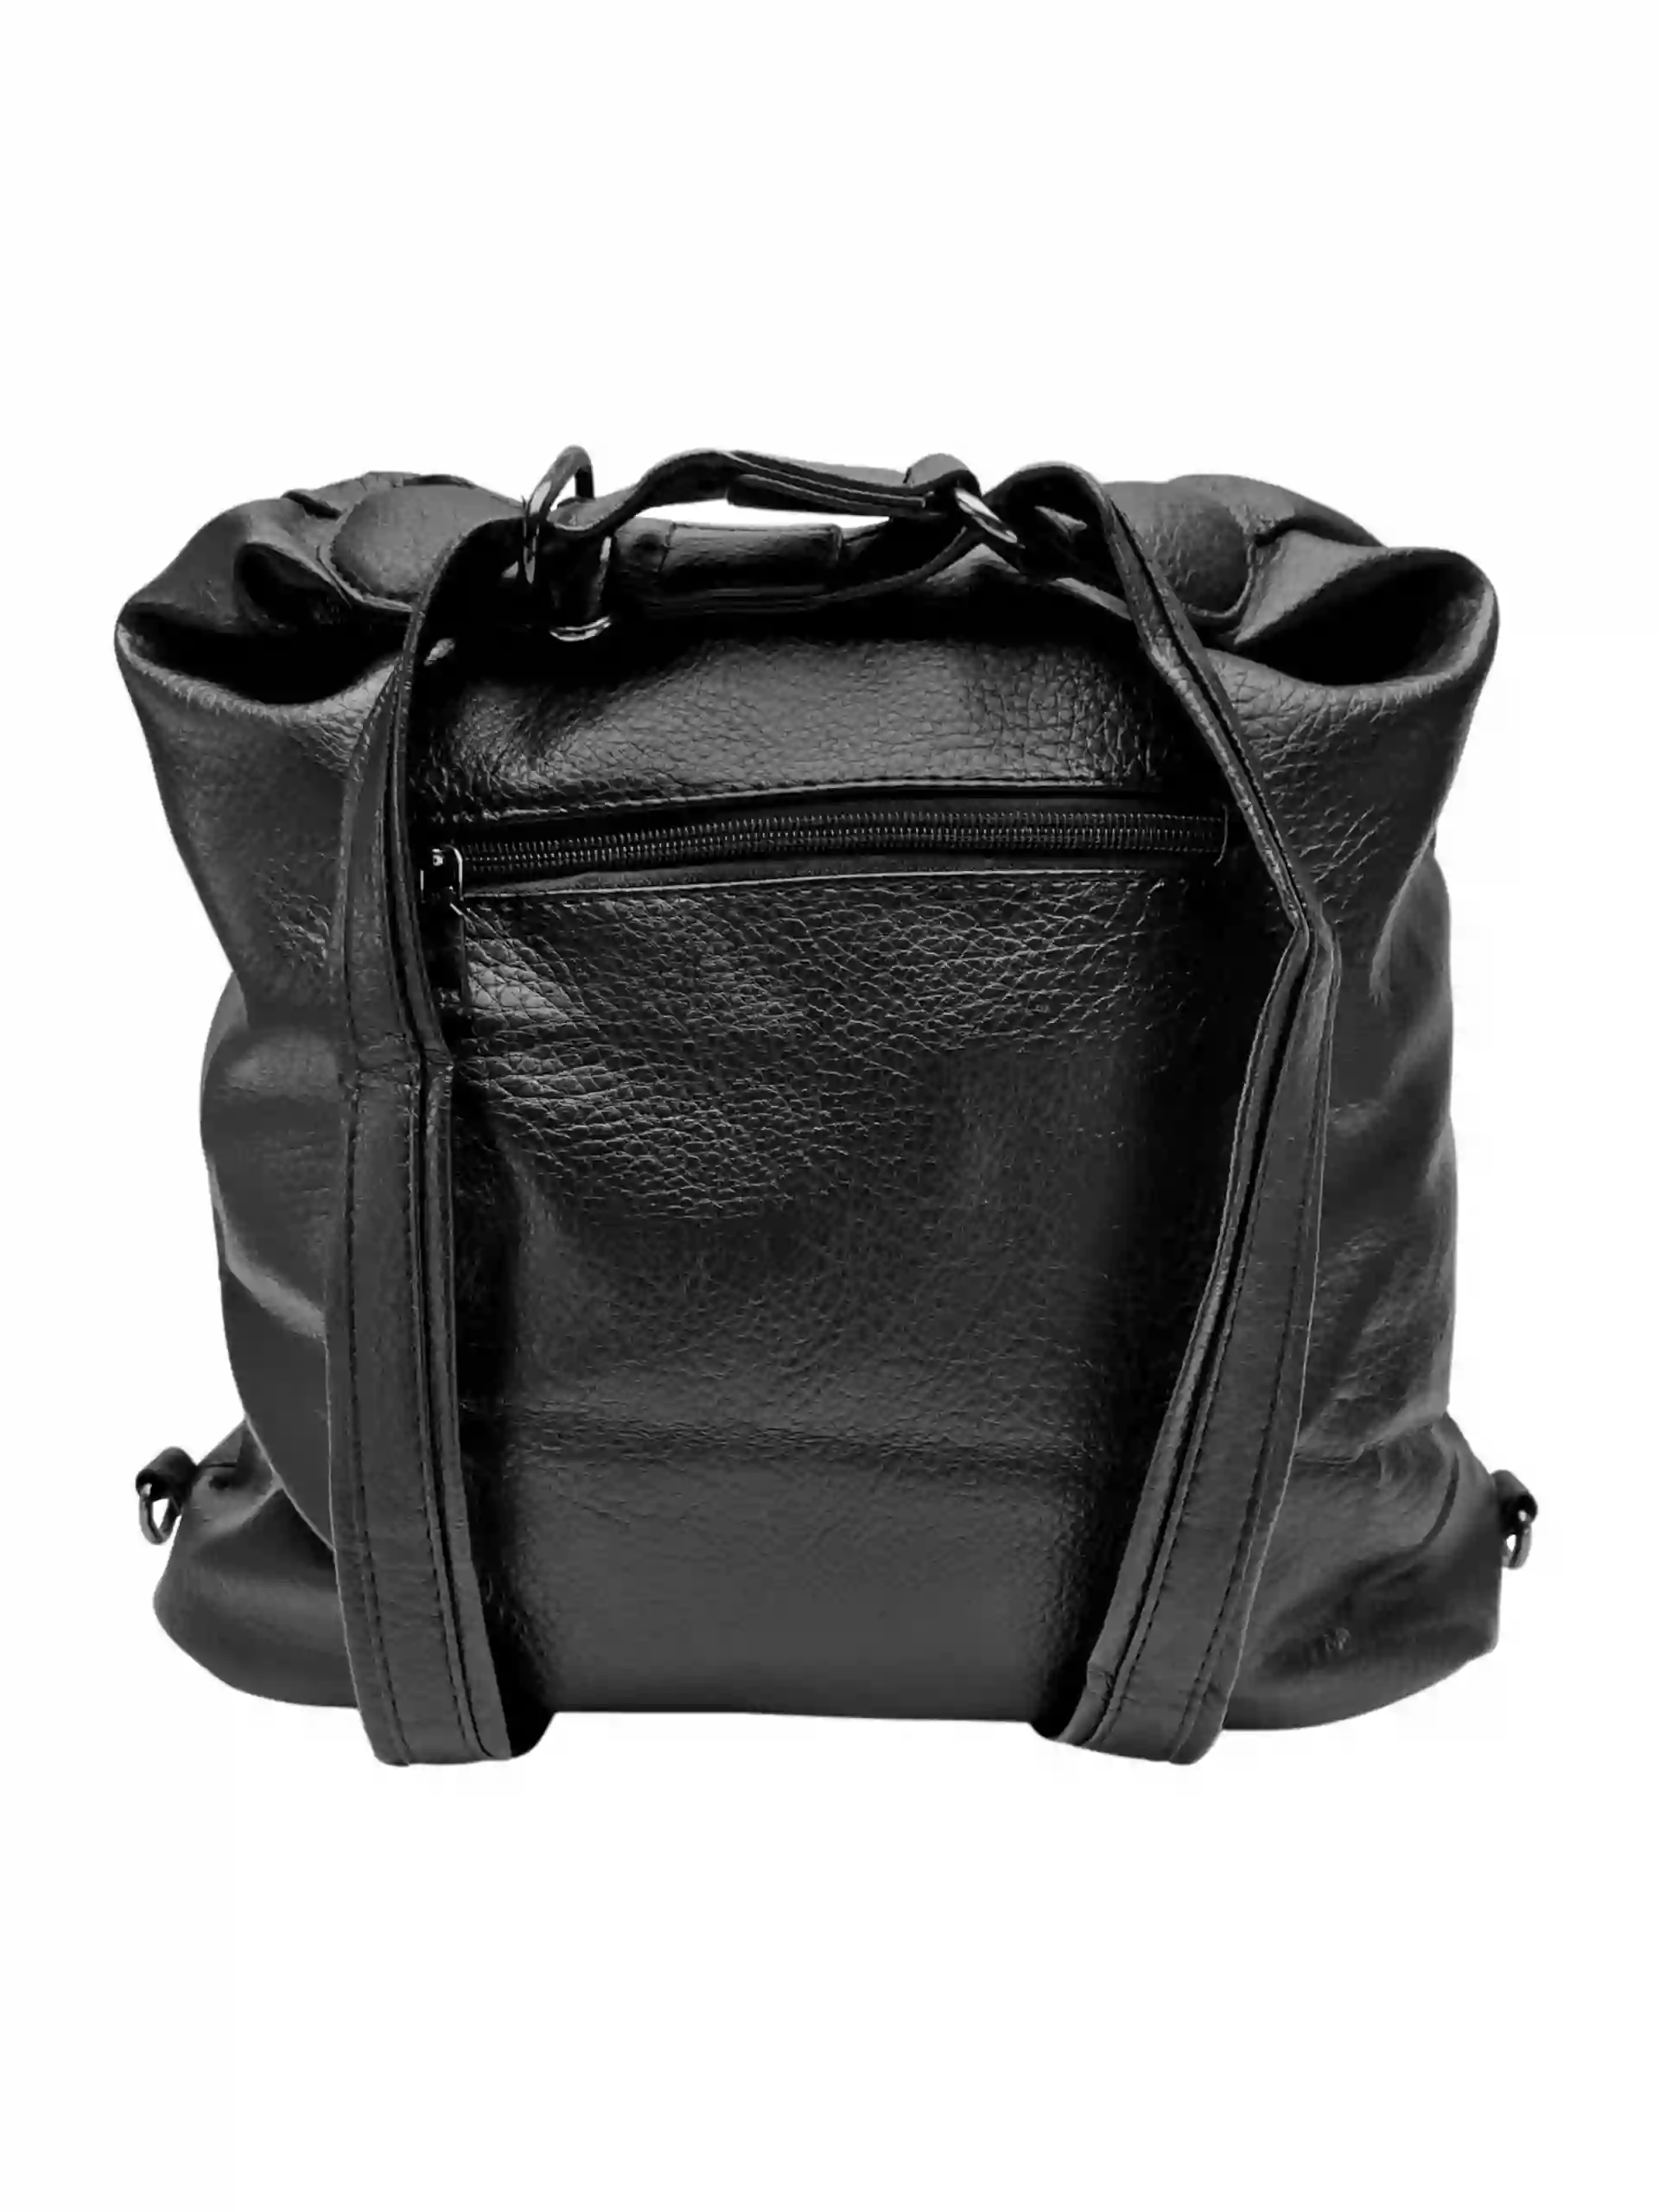 Velký černý kabelko-batoh 2v1 s praktickými kapsami, Miss Moda, 980953, zadní strana kabelko-batohu 2v1 s popruhy